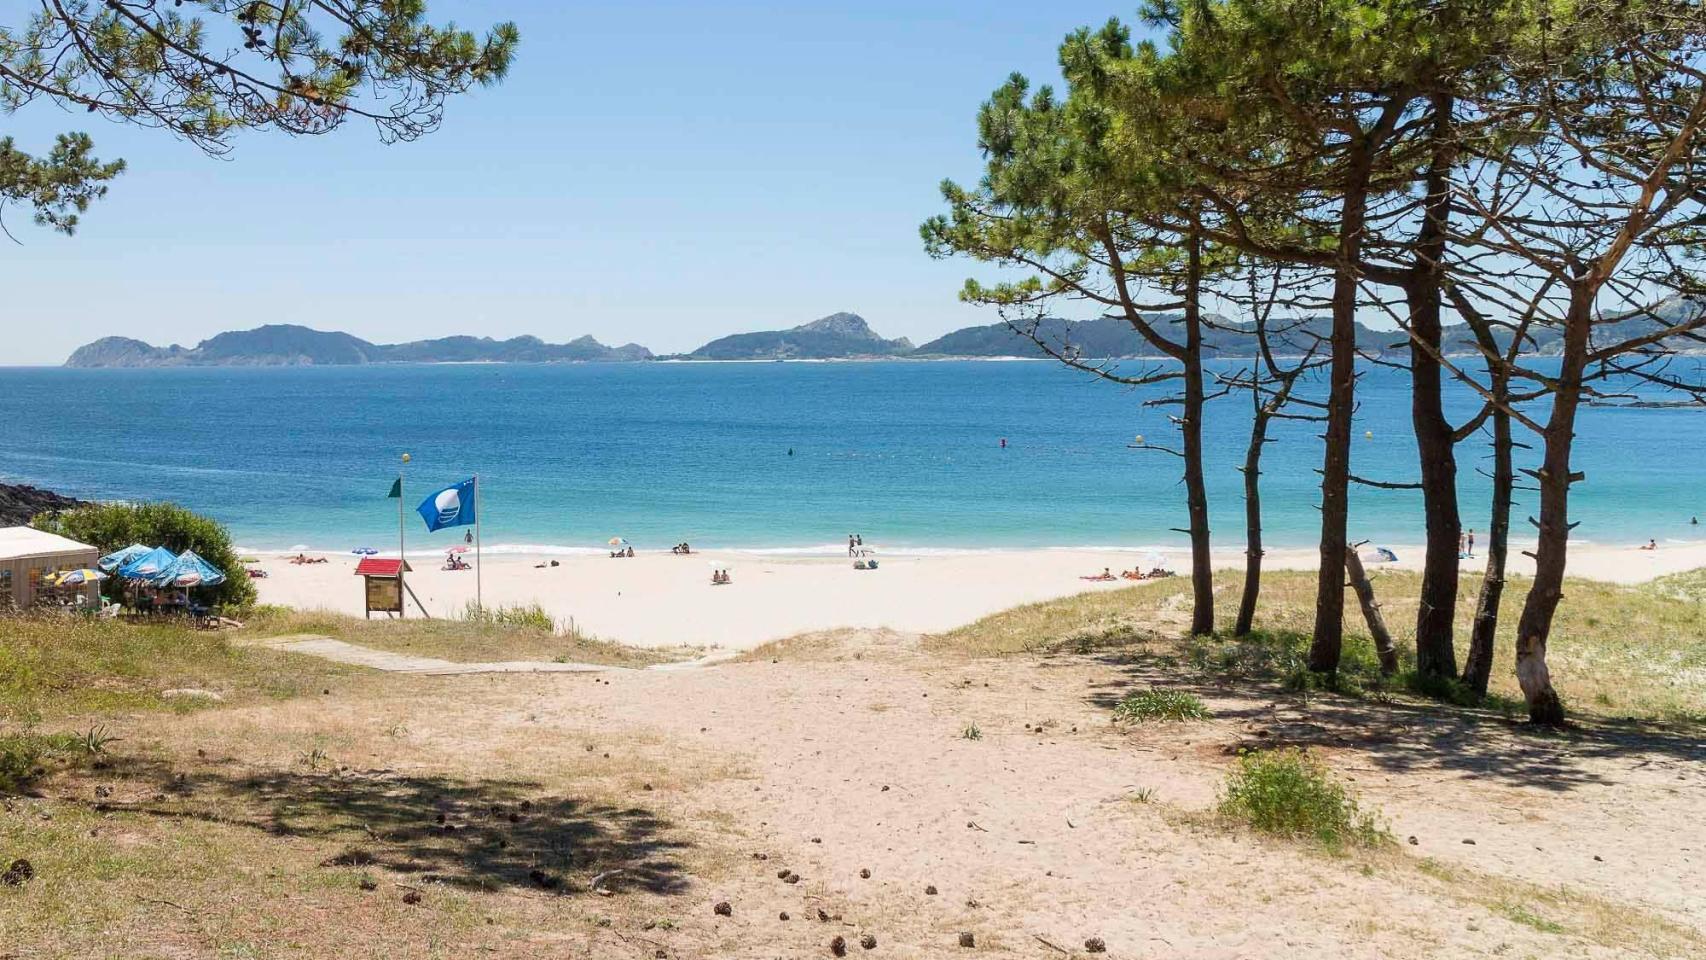 Uno de los arenales más bellos y salvajes del sur de la comunidad gallega.